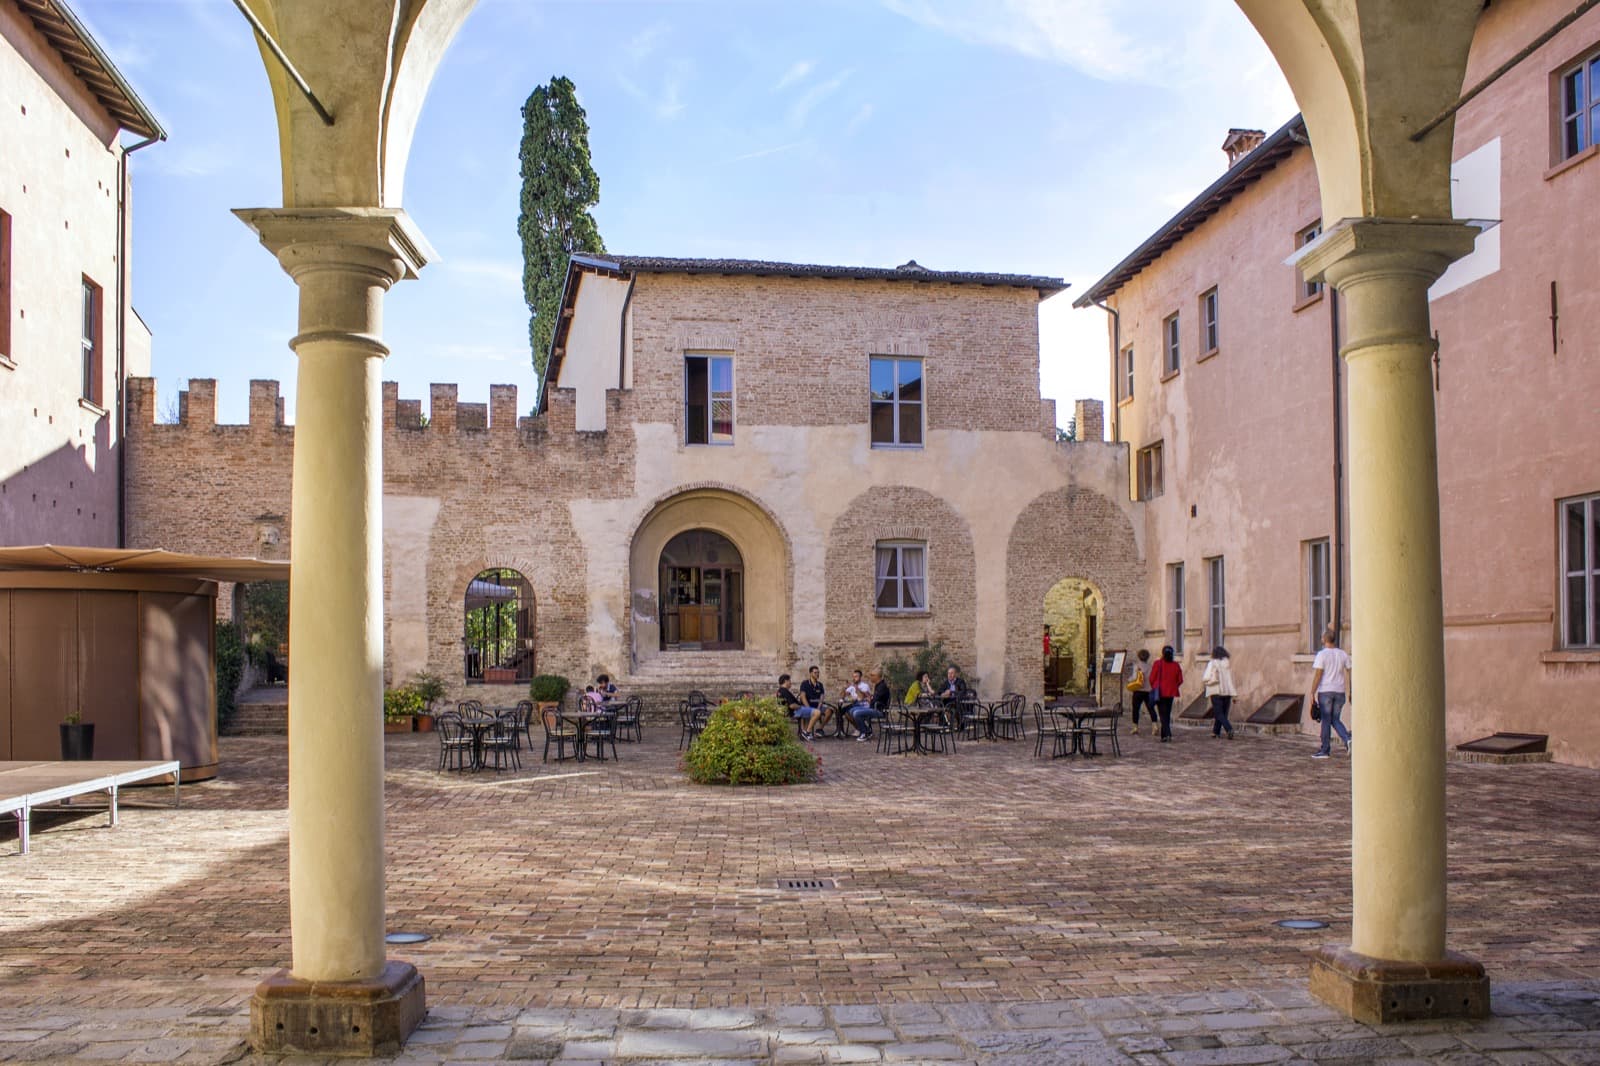 Fiorano Modenese (MO), Castello di Spezzano, ph.Ovikovi, WLM2017, CCBYSA 4.0